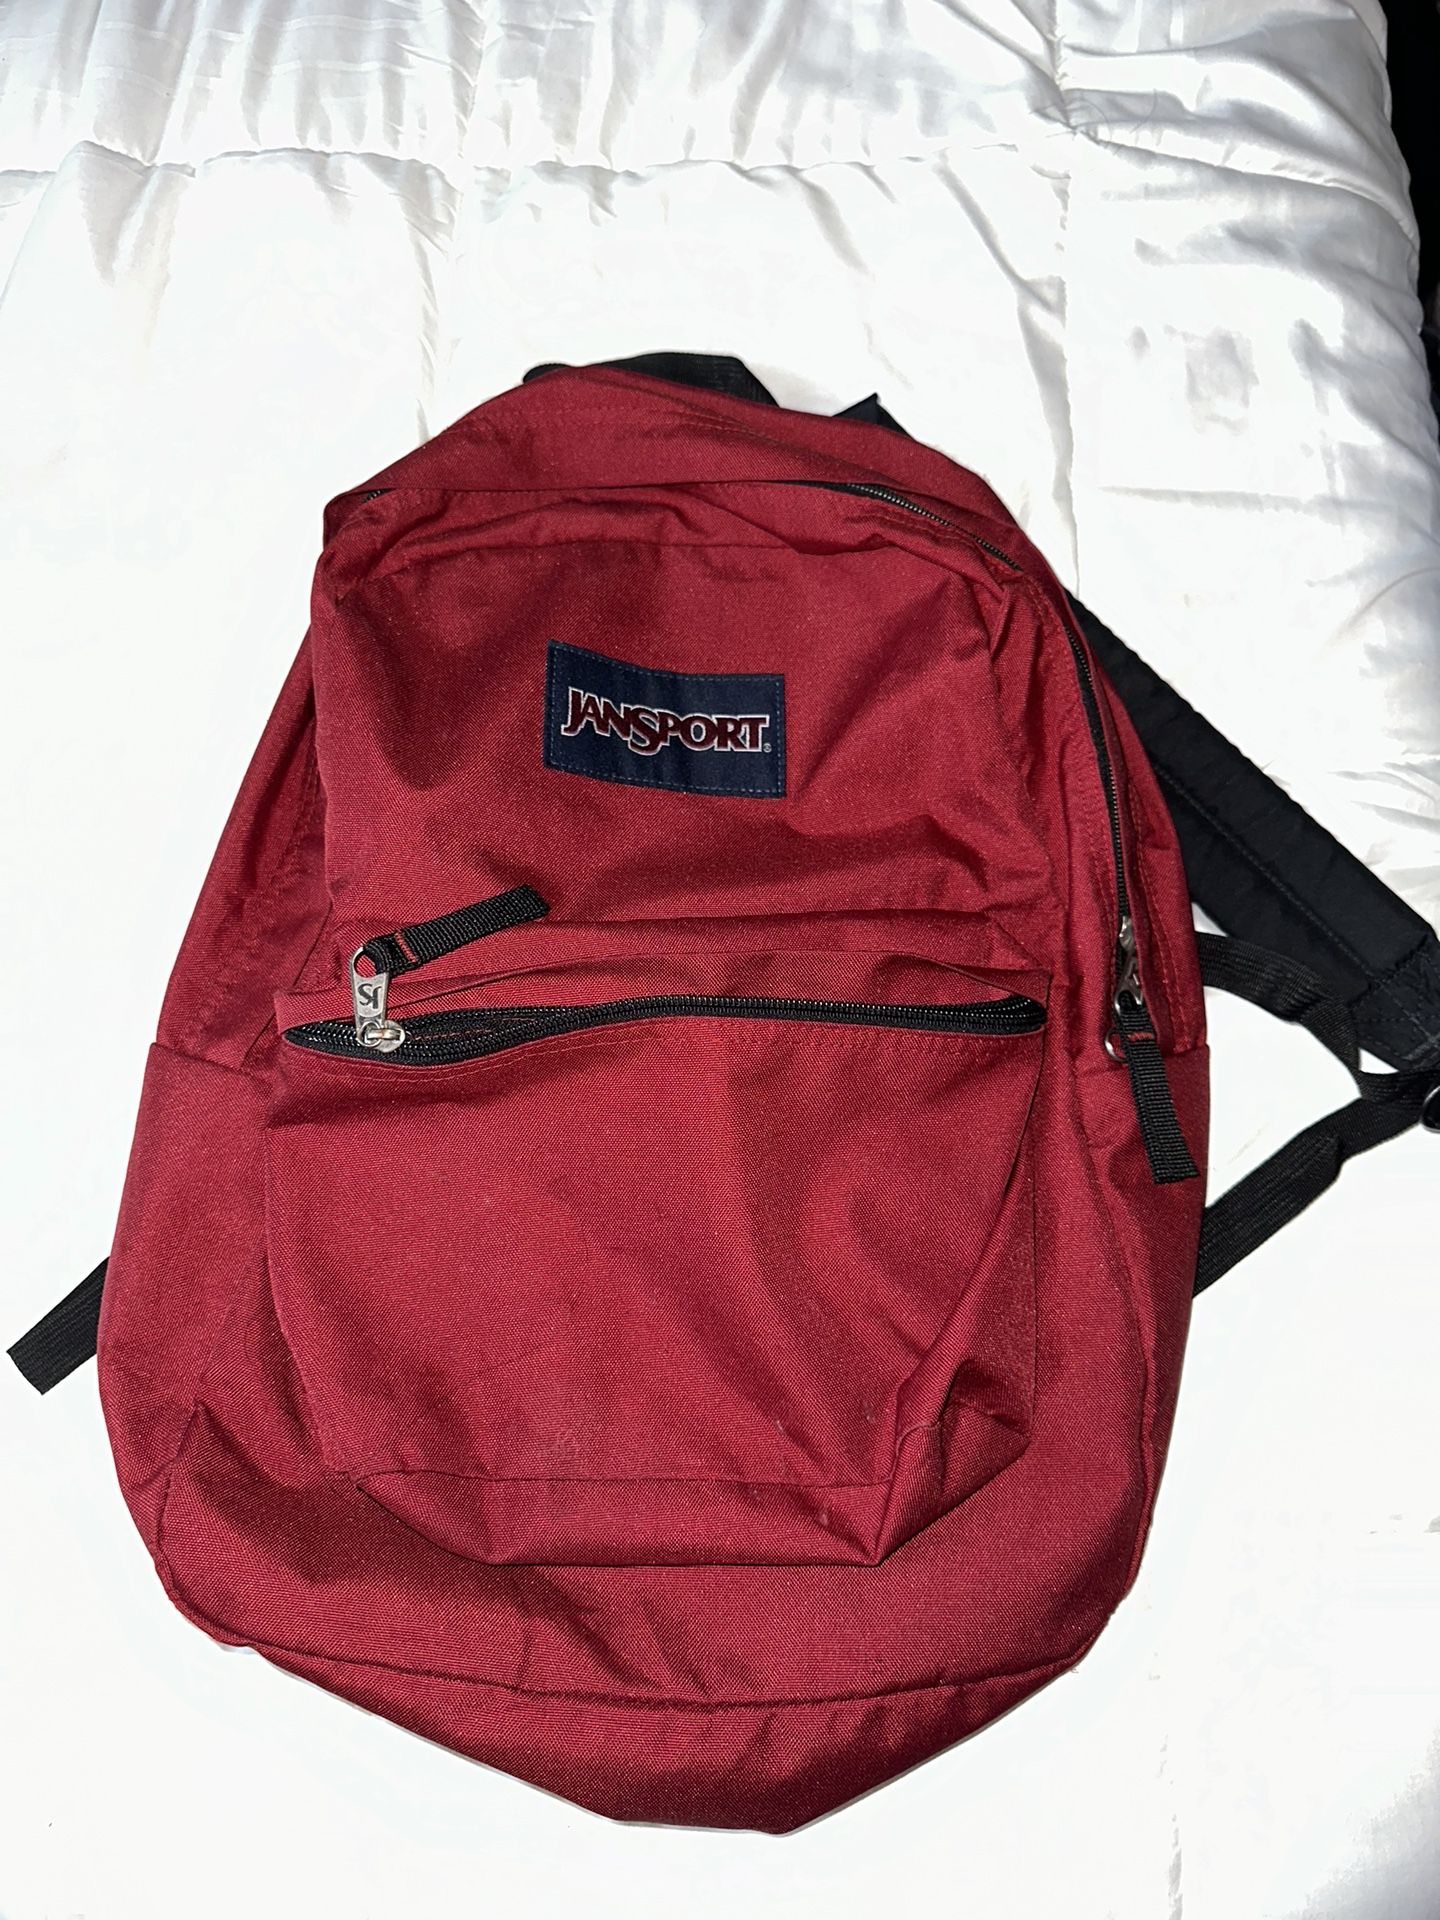 Jan sport backpack (maroon)